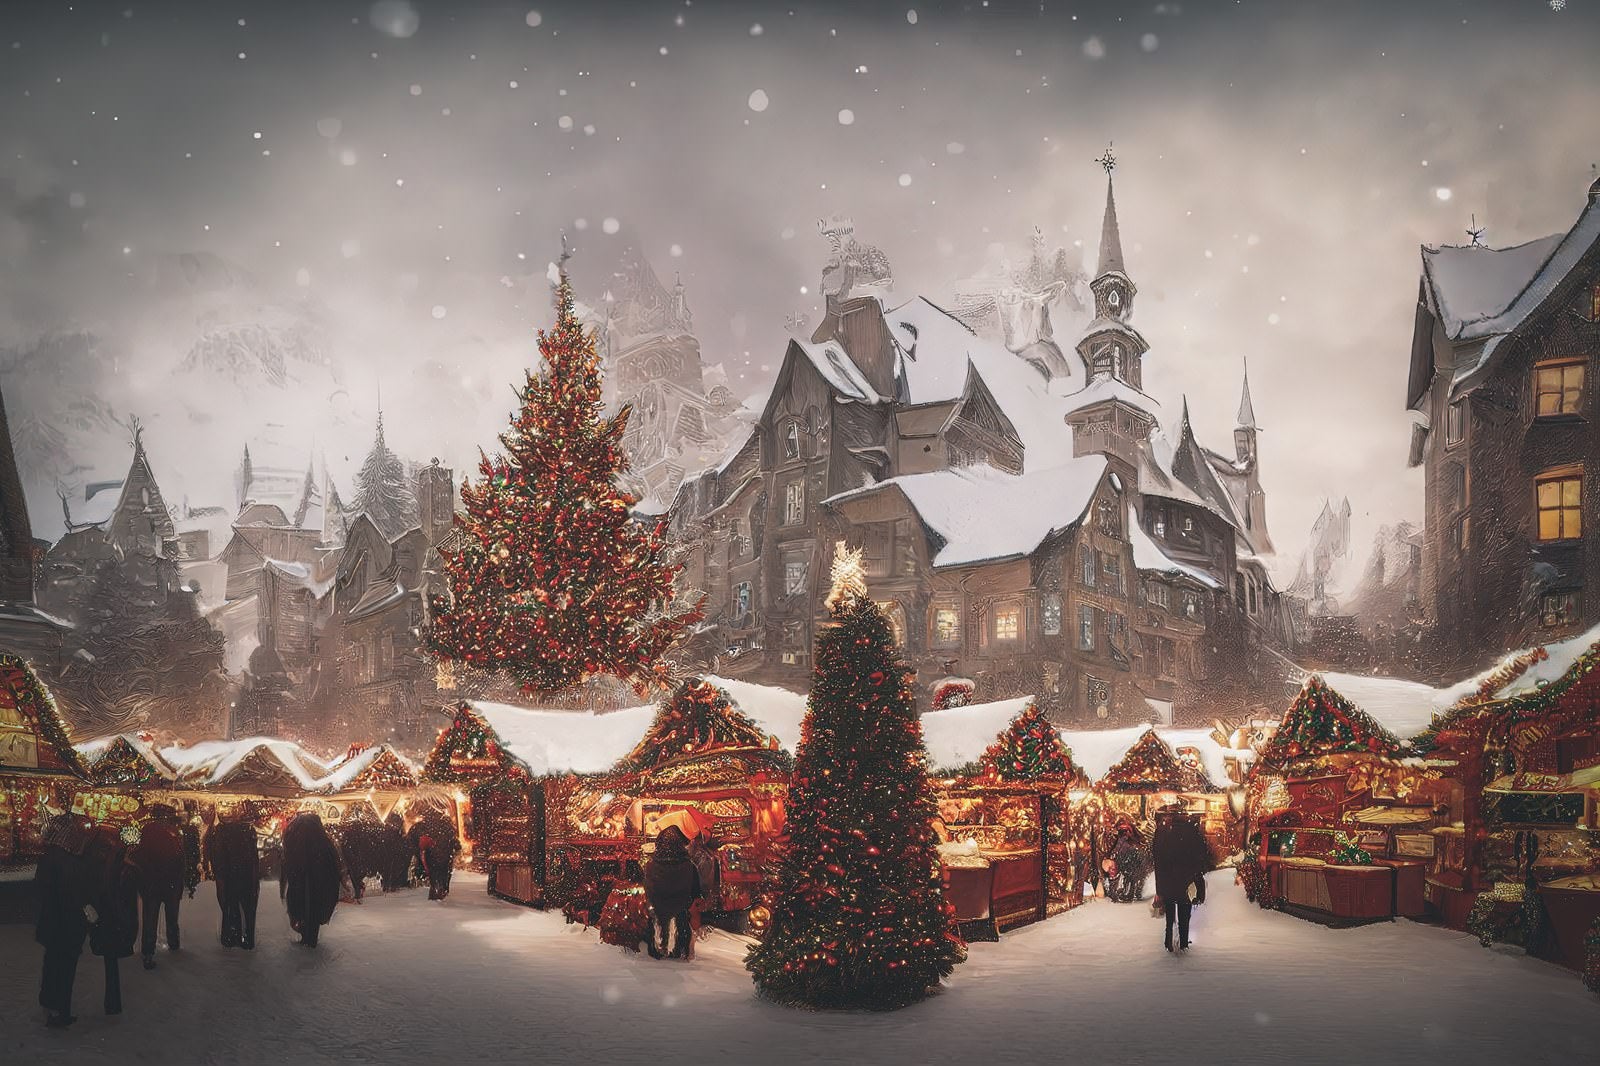 「雪が舞うクリスマスイブの街の様子」の写真